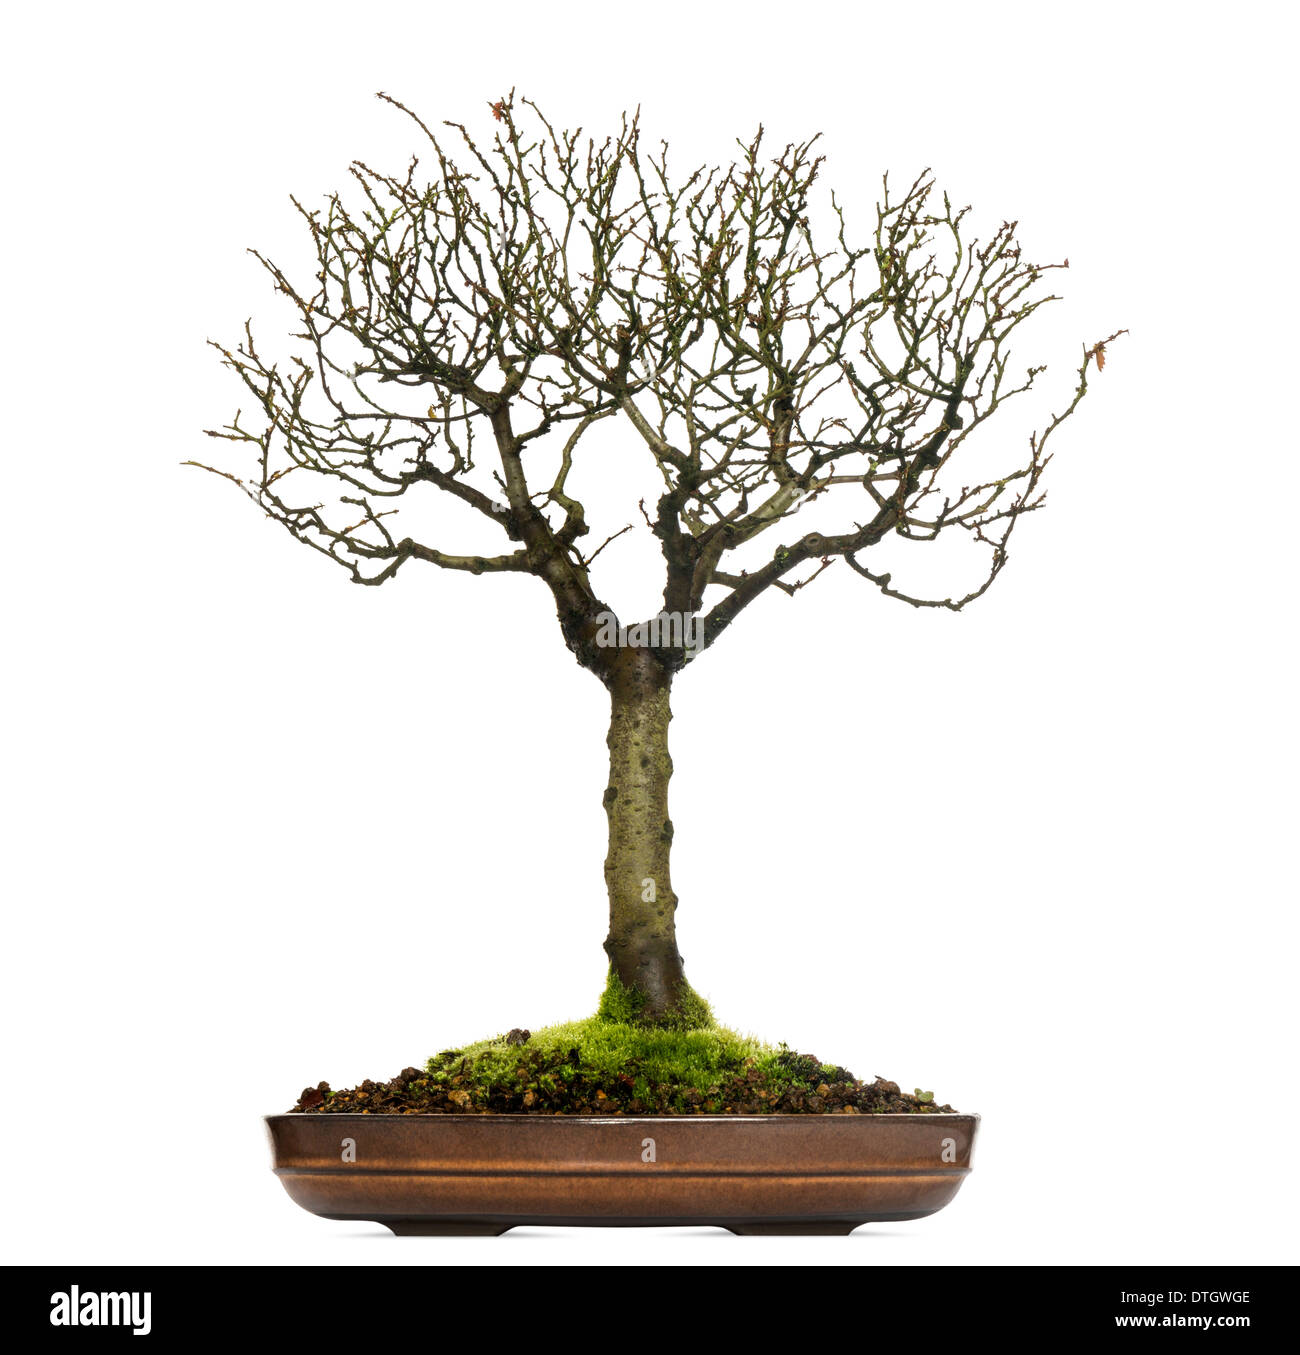 Zelkova bonsaï arbre, contre fond blanc Banque D'Images